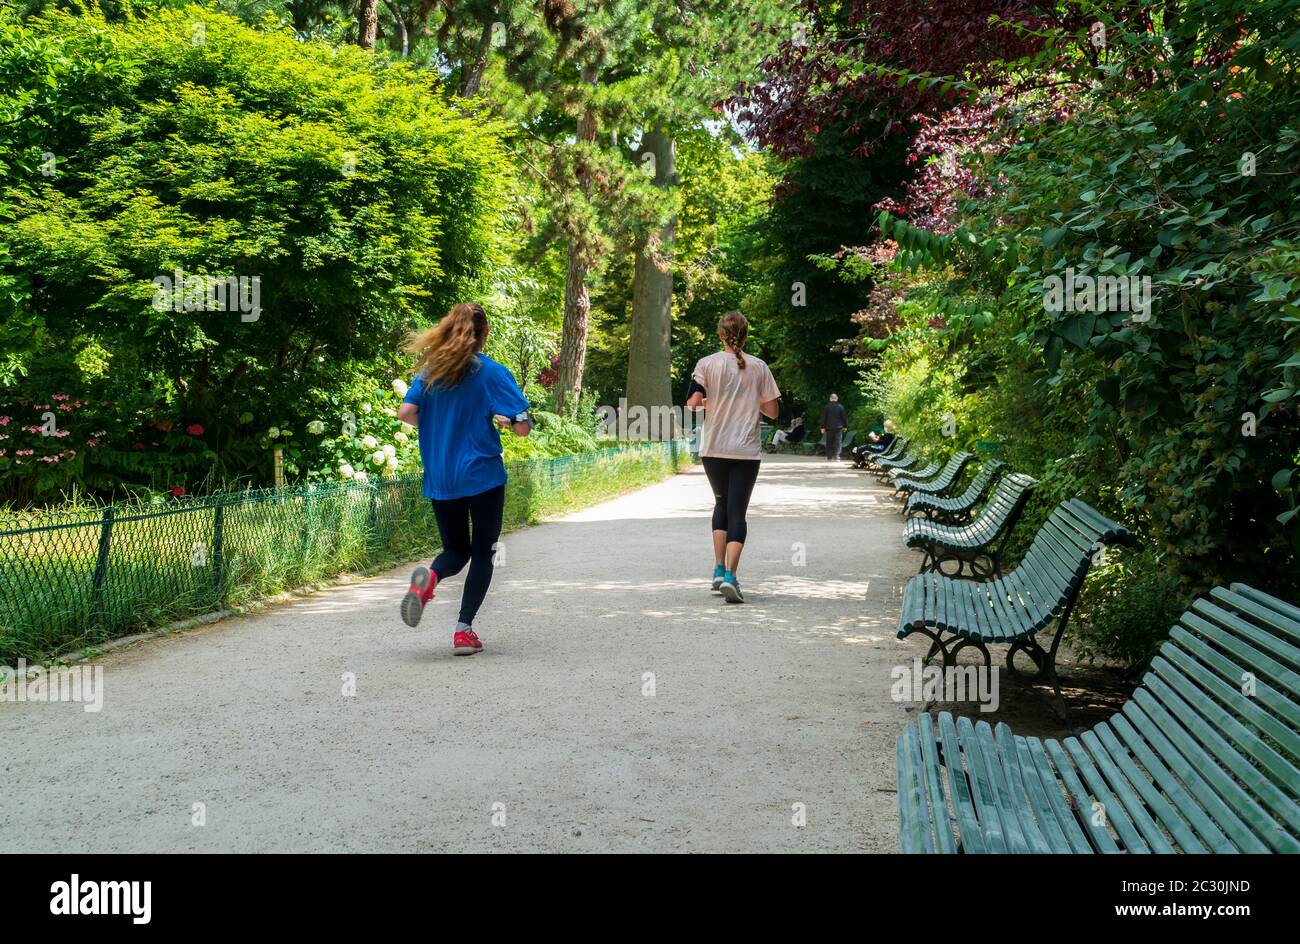 Parisians jogging in the Parc Monceau - Paris, France Stock Photo